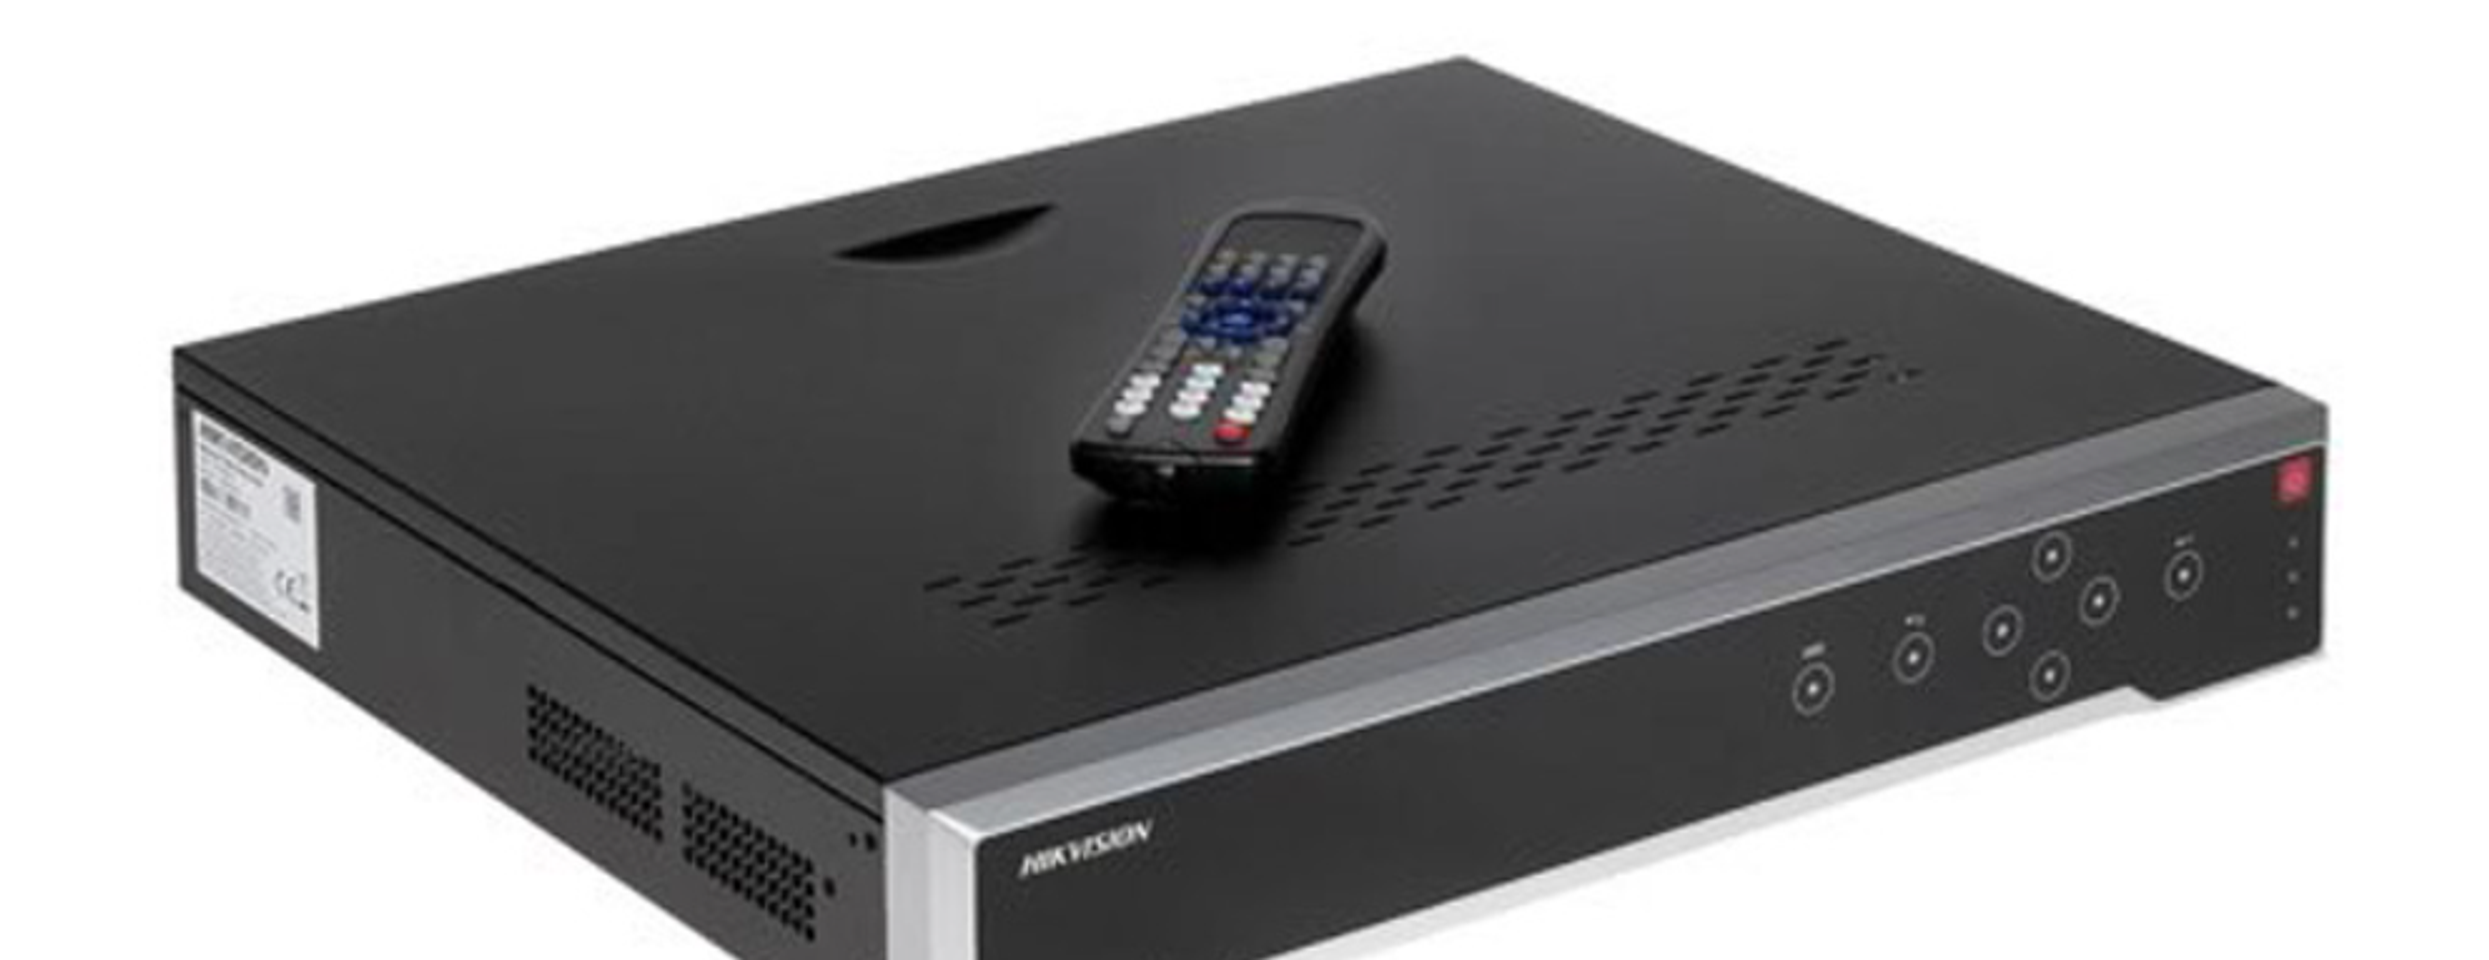 Đầu ghi hình camera IP 32 kênh Hikvision DS-8632NI-K8 giao diện đơn giản, dễ sử dụng  